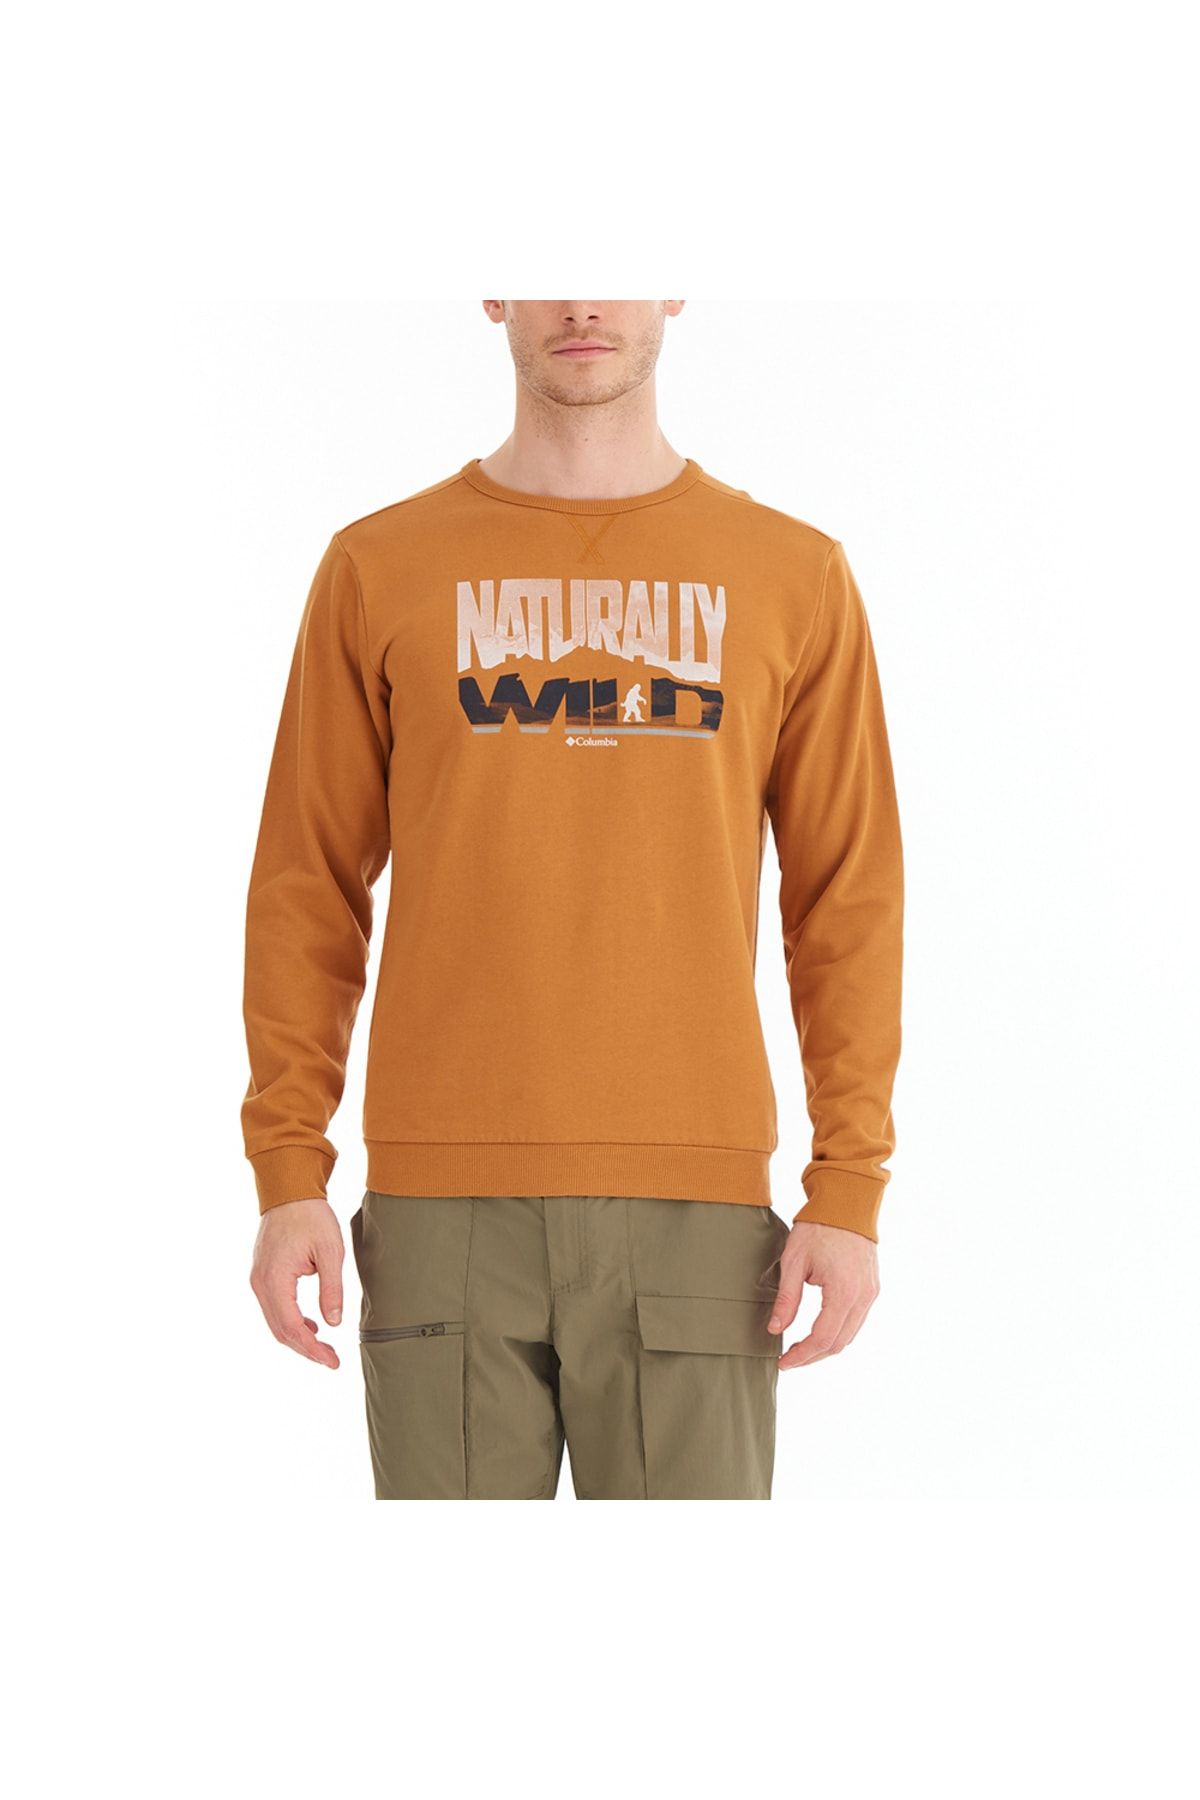 Columbia Naturally Wild Crew Erkek Sweatshirt